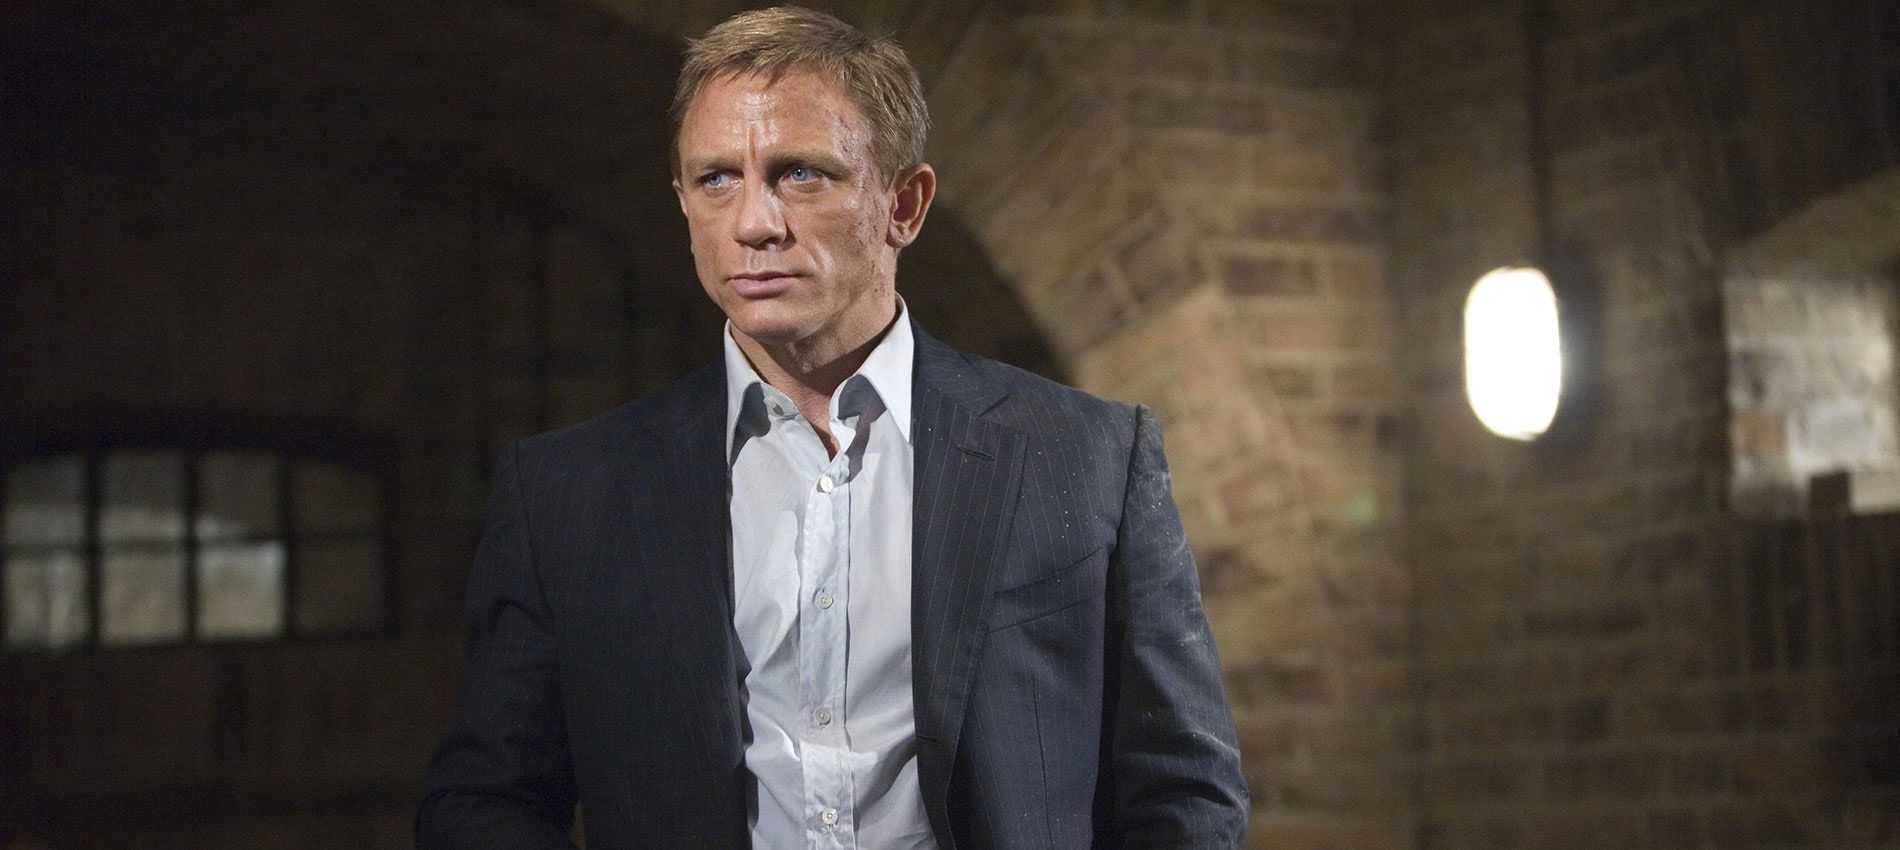 Ranking All Daniel Craig’s Bond Movies, Worst To Best